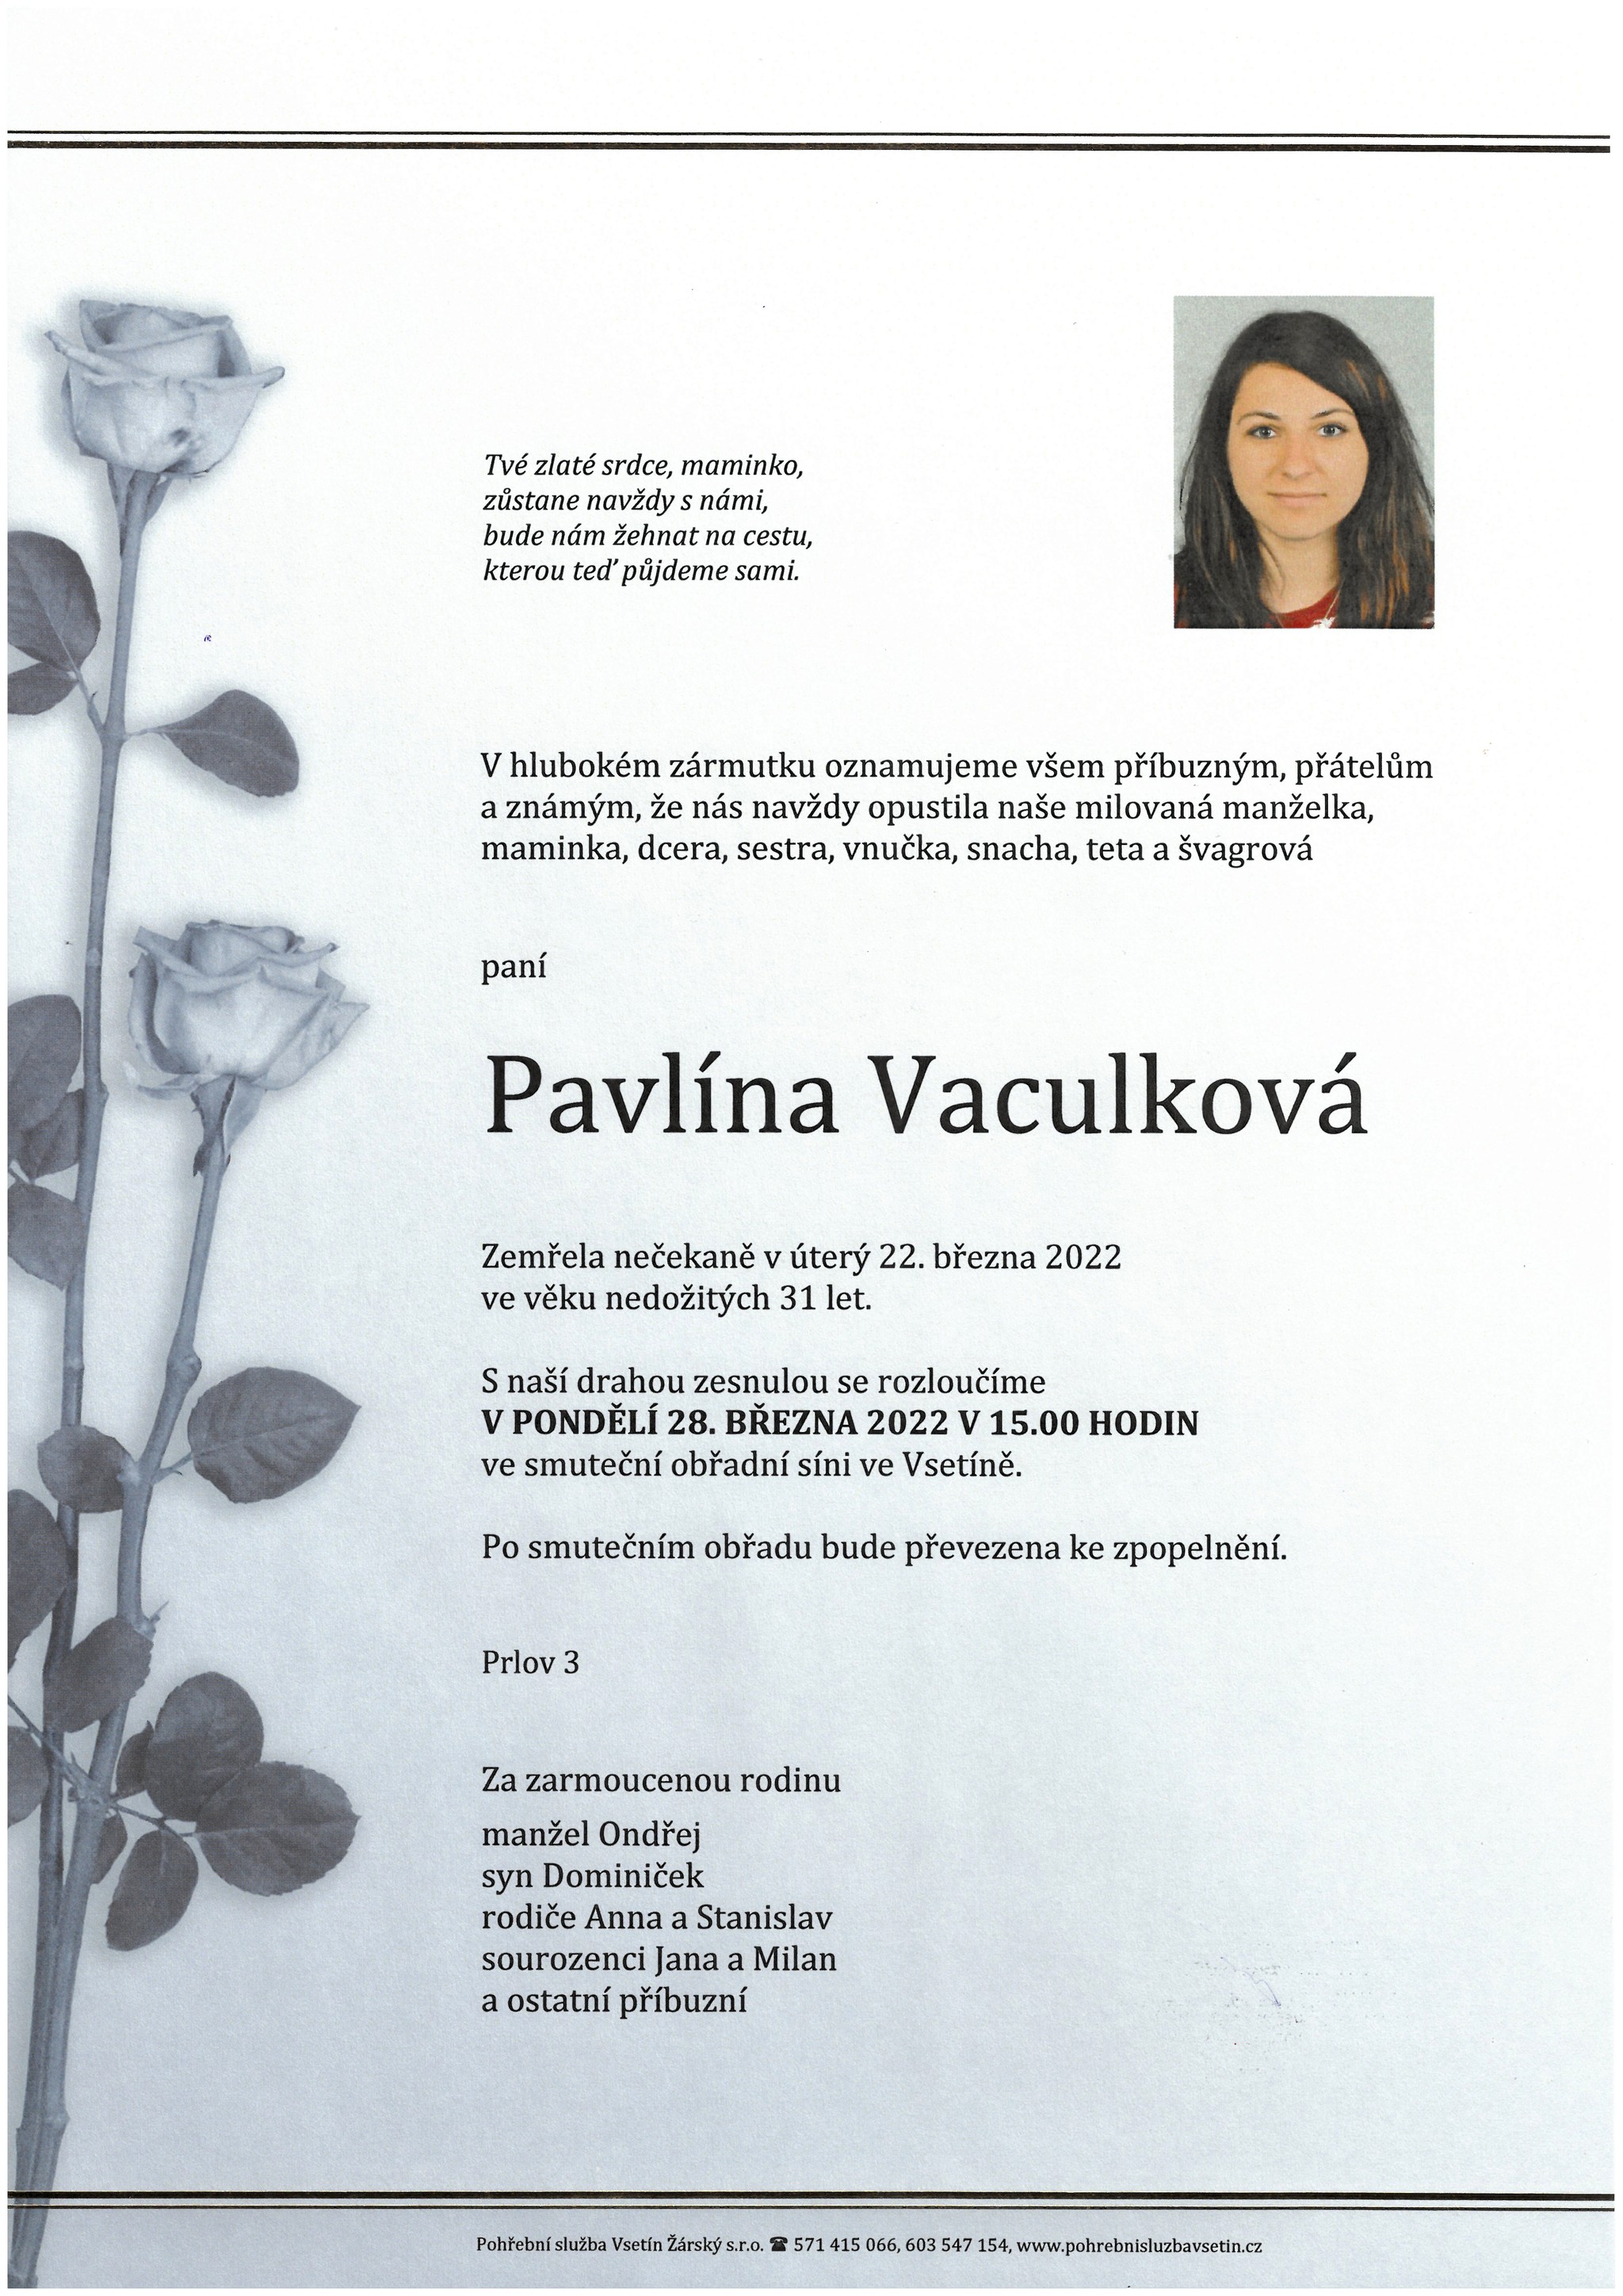 Pavlína Vaculková